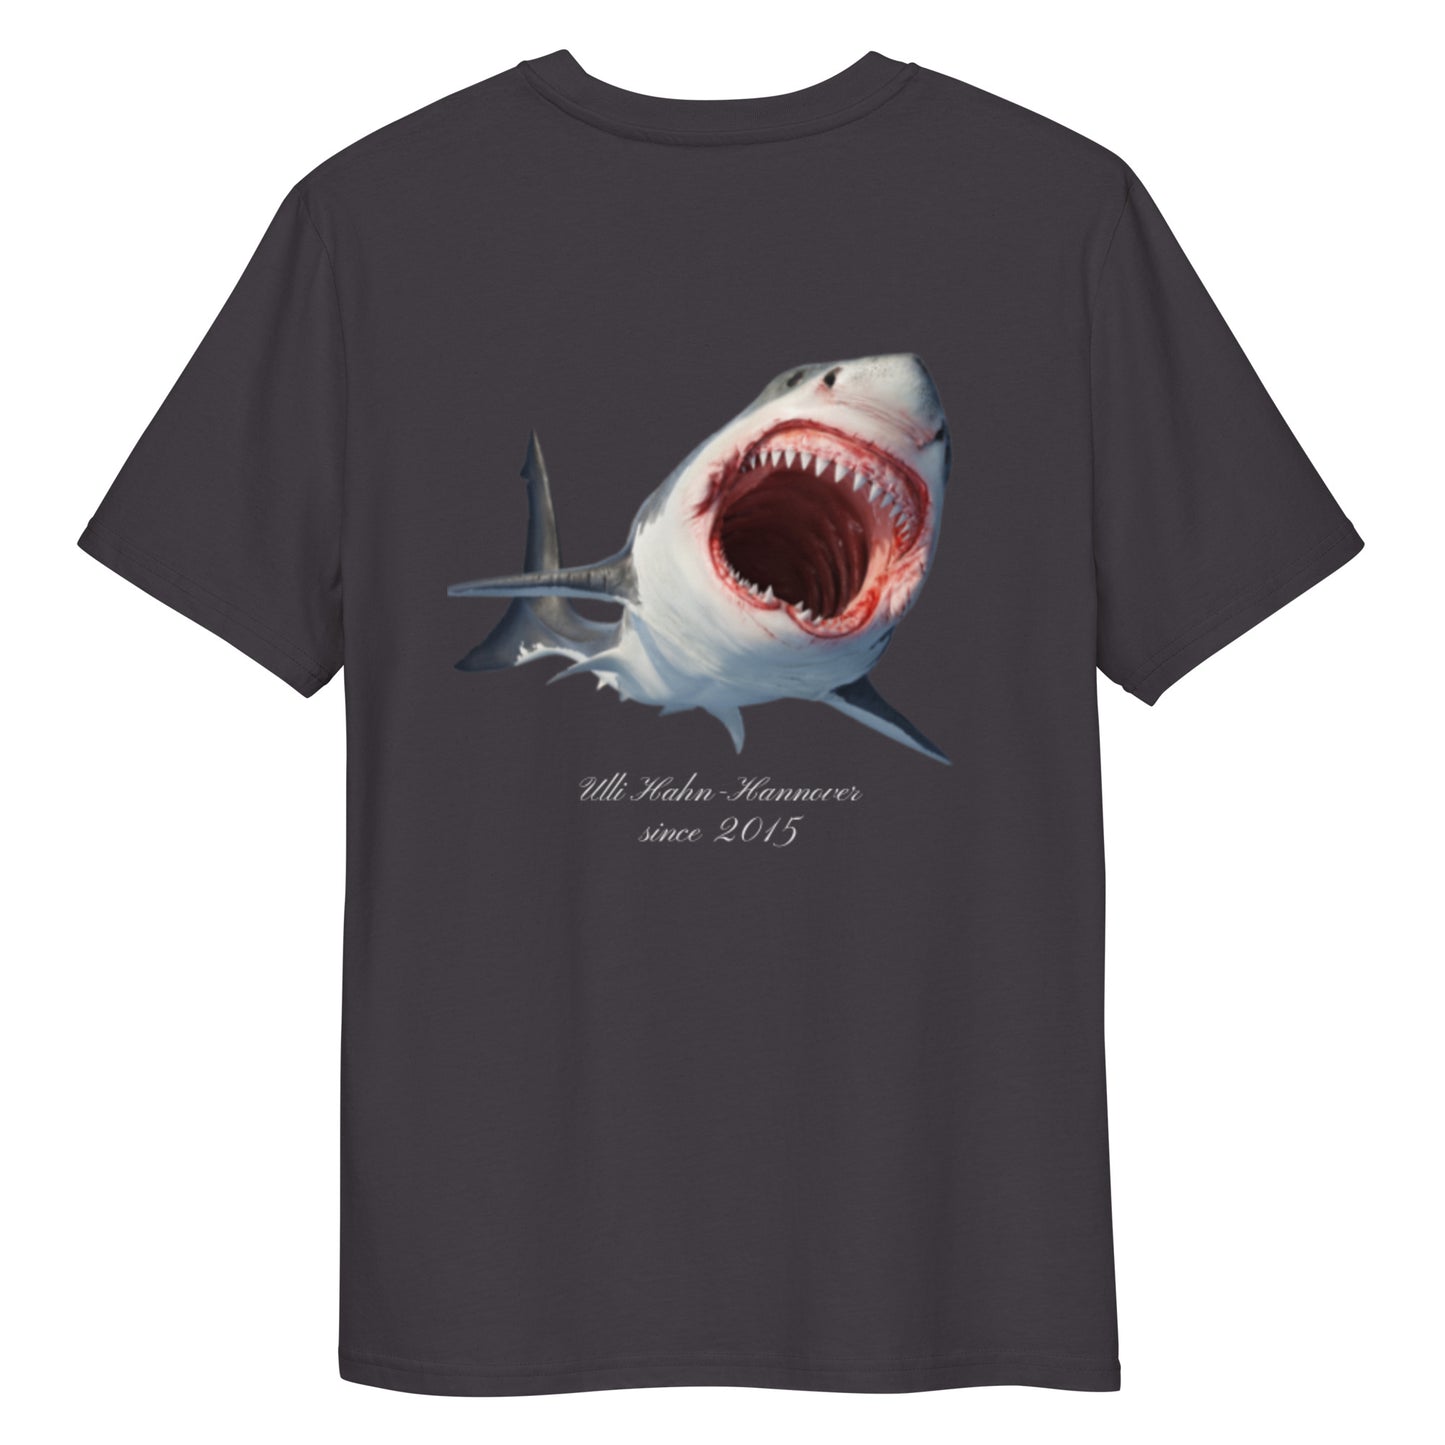 Ulli Hahn Shark T-Shirt